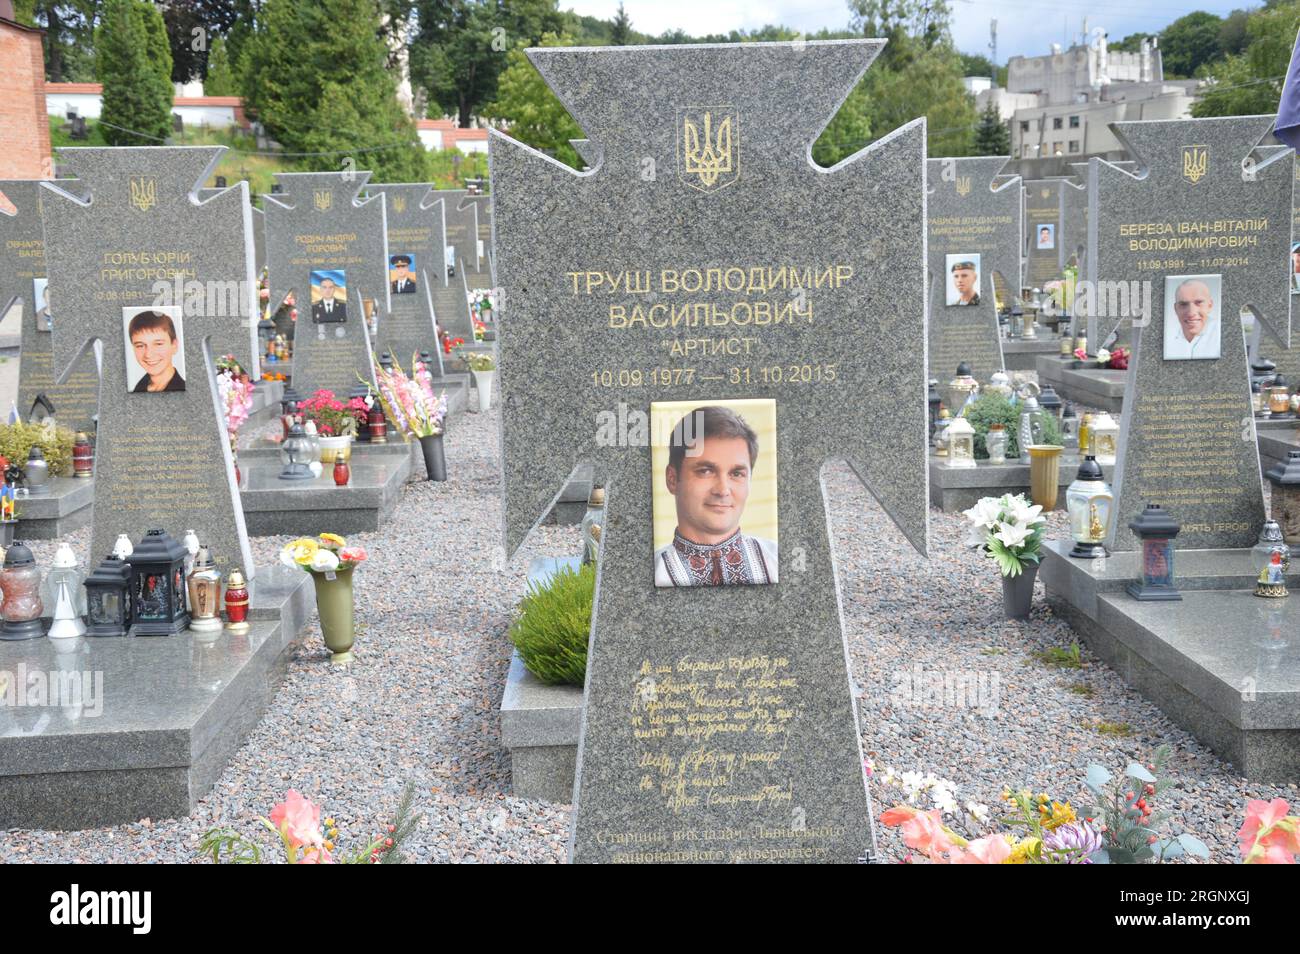 Lemberg, Ukraine - Friedhof Lychakiv - die Beerdigung der Soldaten der ukrainischen Armee, die seit 2014 im russisch-ukrainischen Krieg ums Leben kamen. (Foto: Markku Rainer Peltonen) Stockfoto